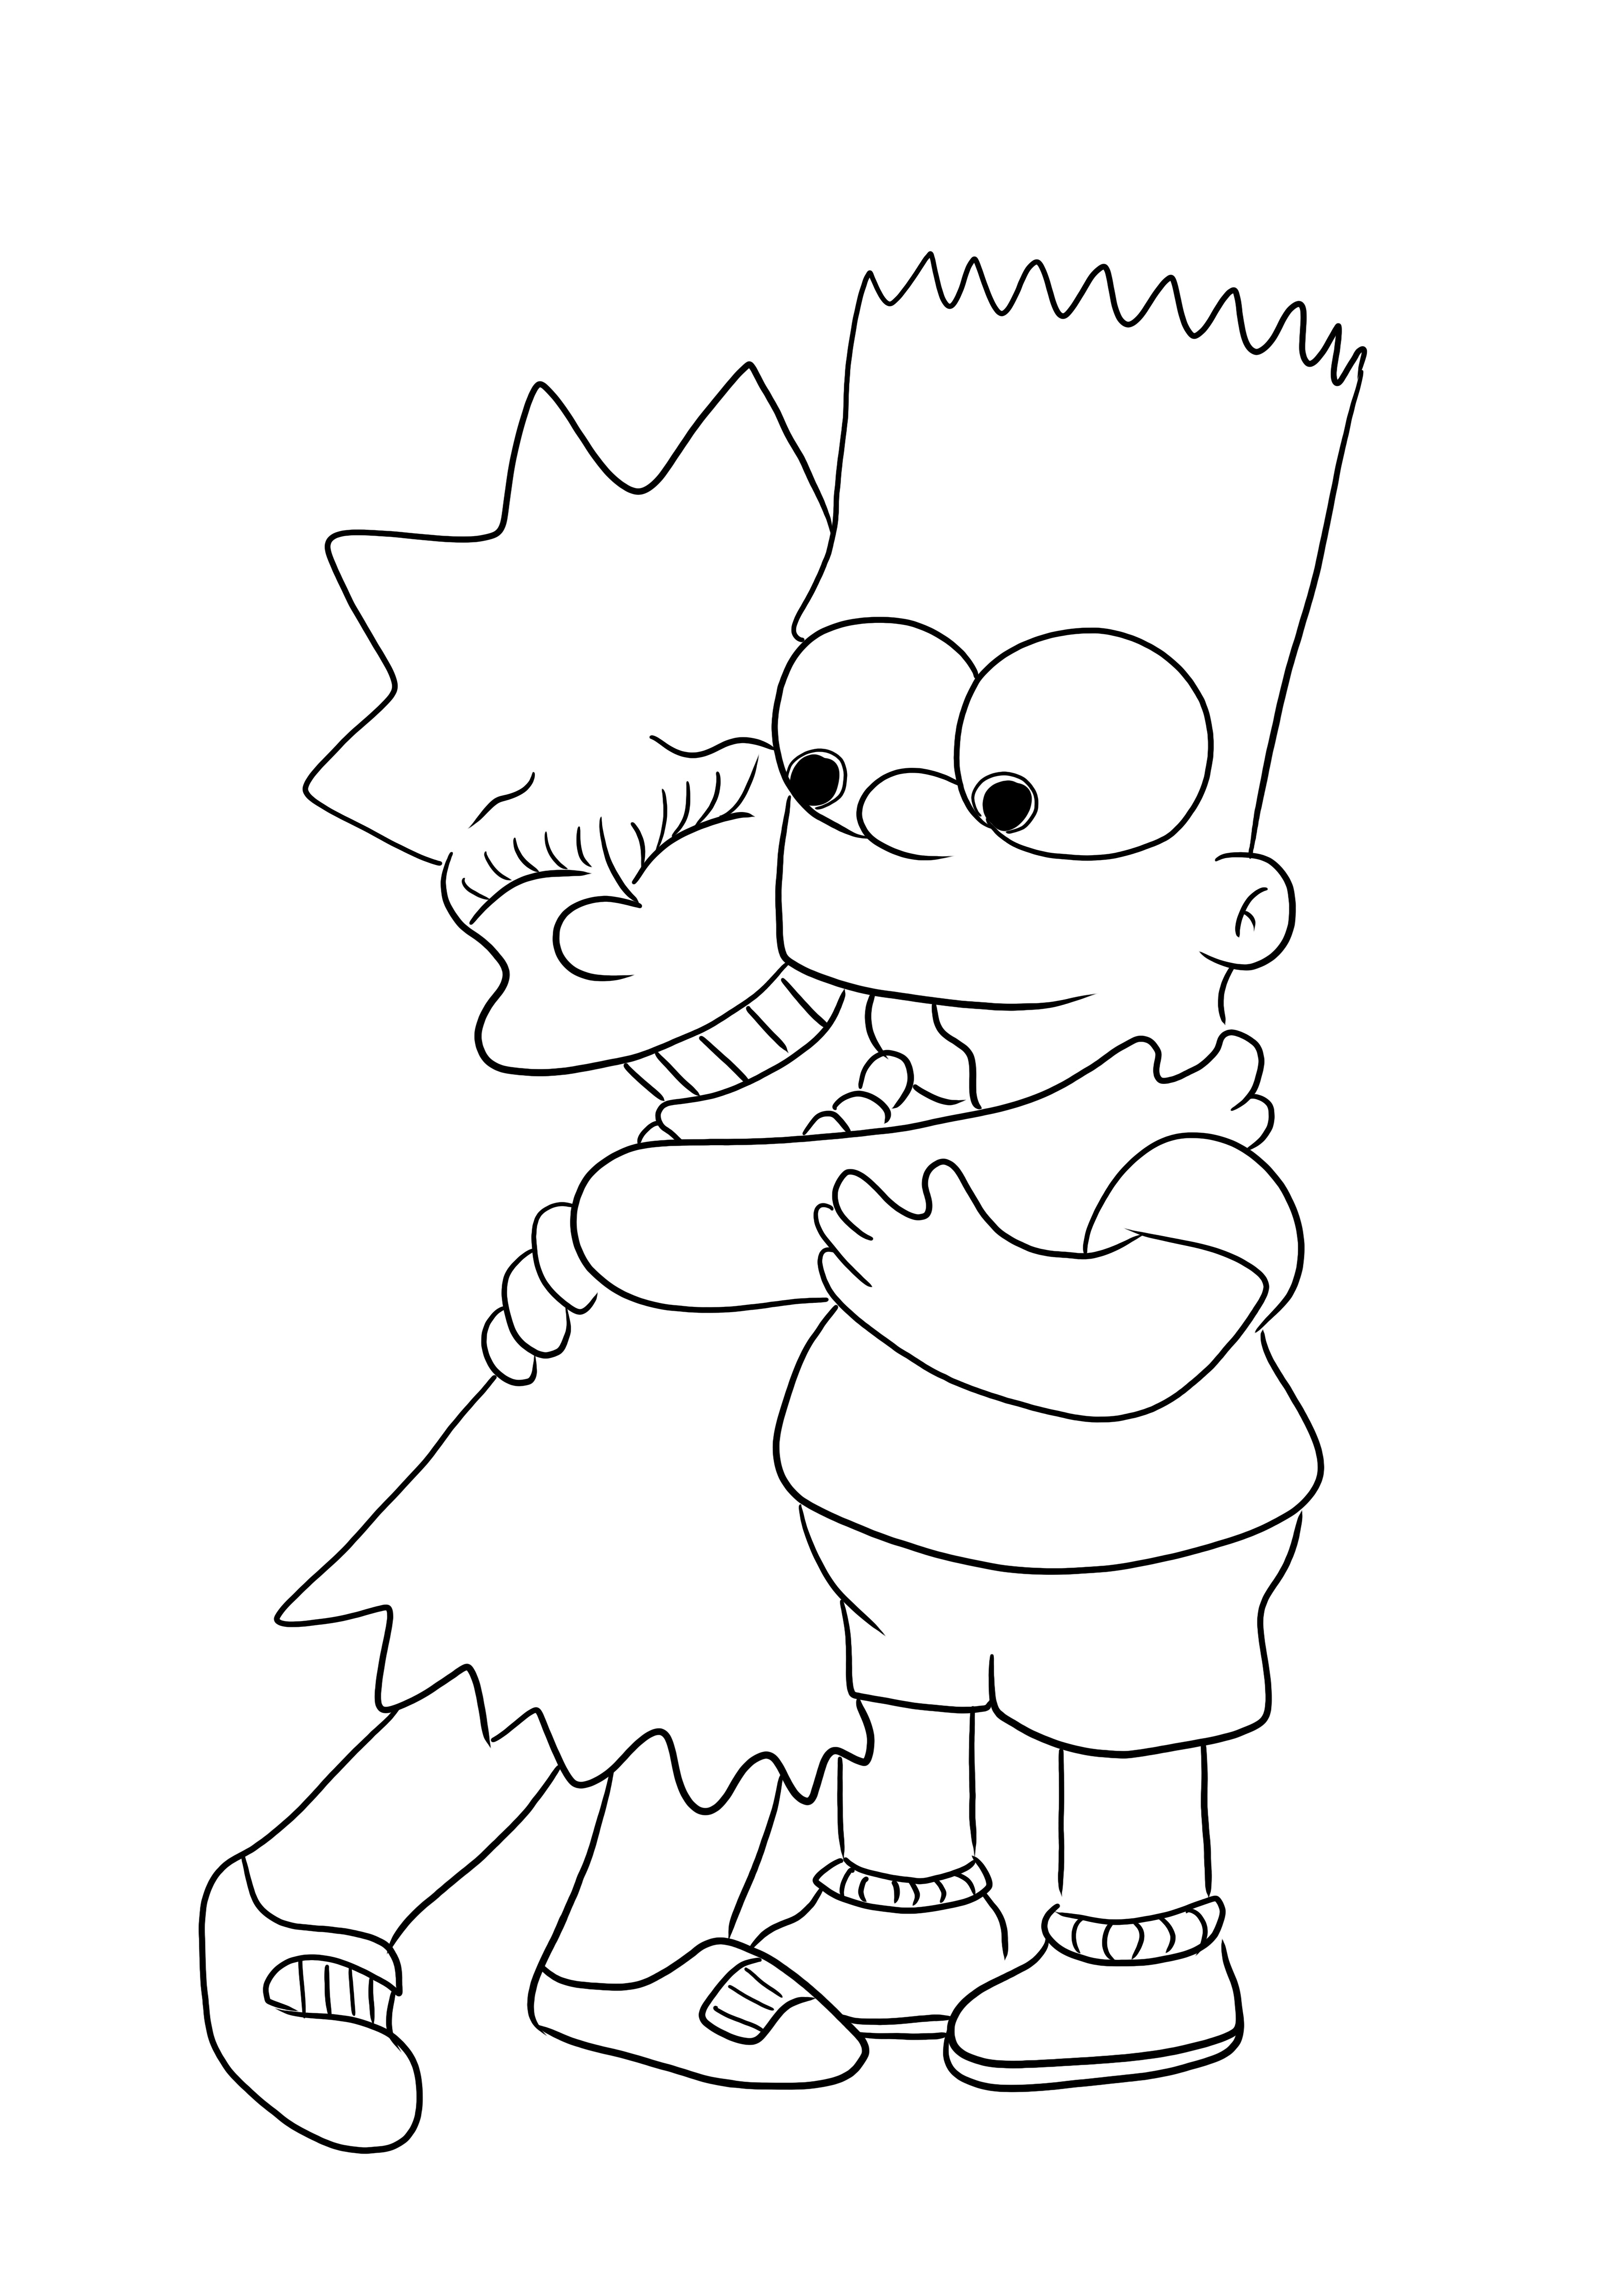 Simpsons ailesinden Bart ve Lisa'nın çocuklar için basılması için ücretsiz boyama resmi